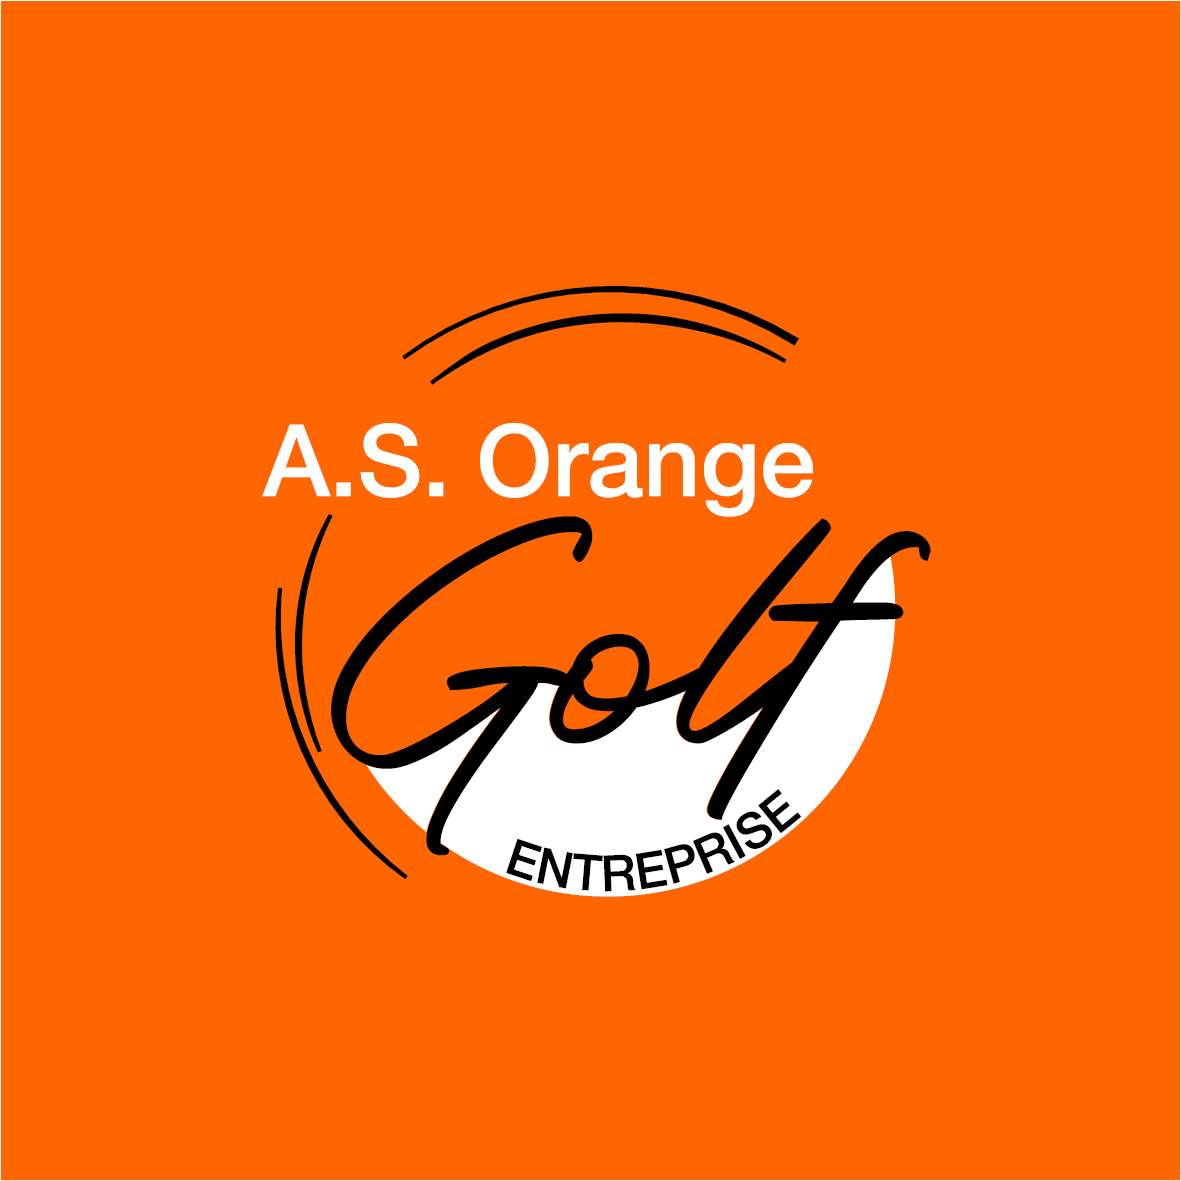 A.S. Orange Golf Entreprise Bourgogne et Franche-Comté